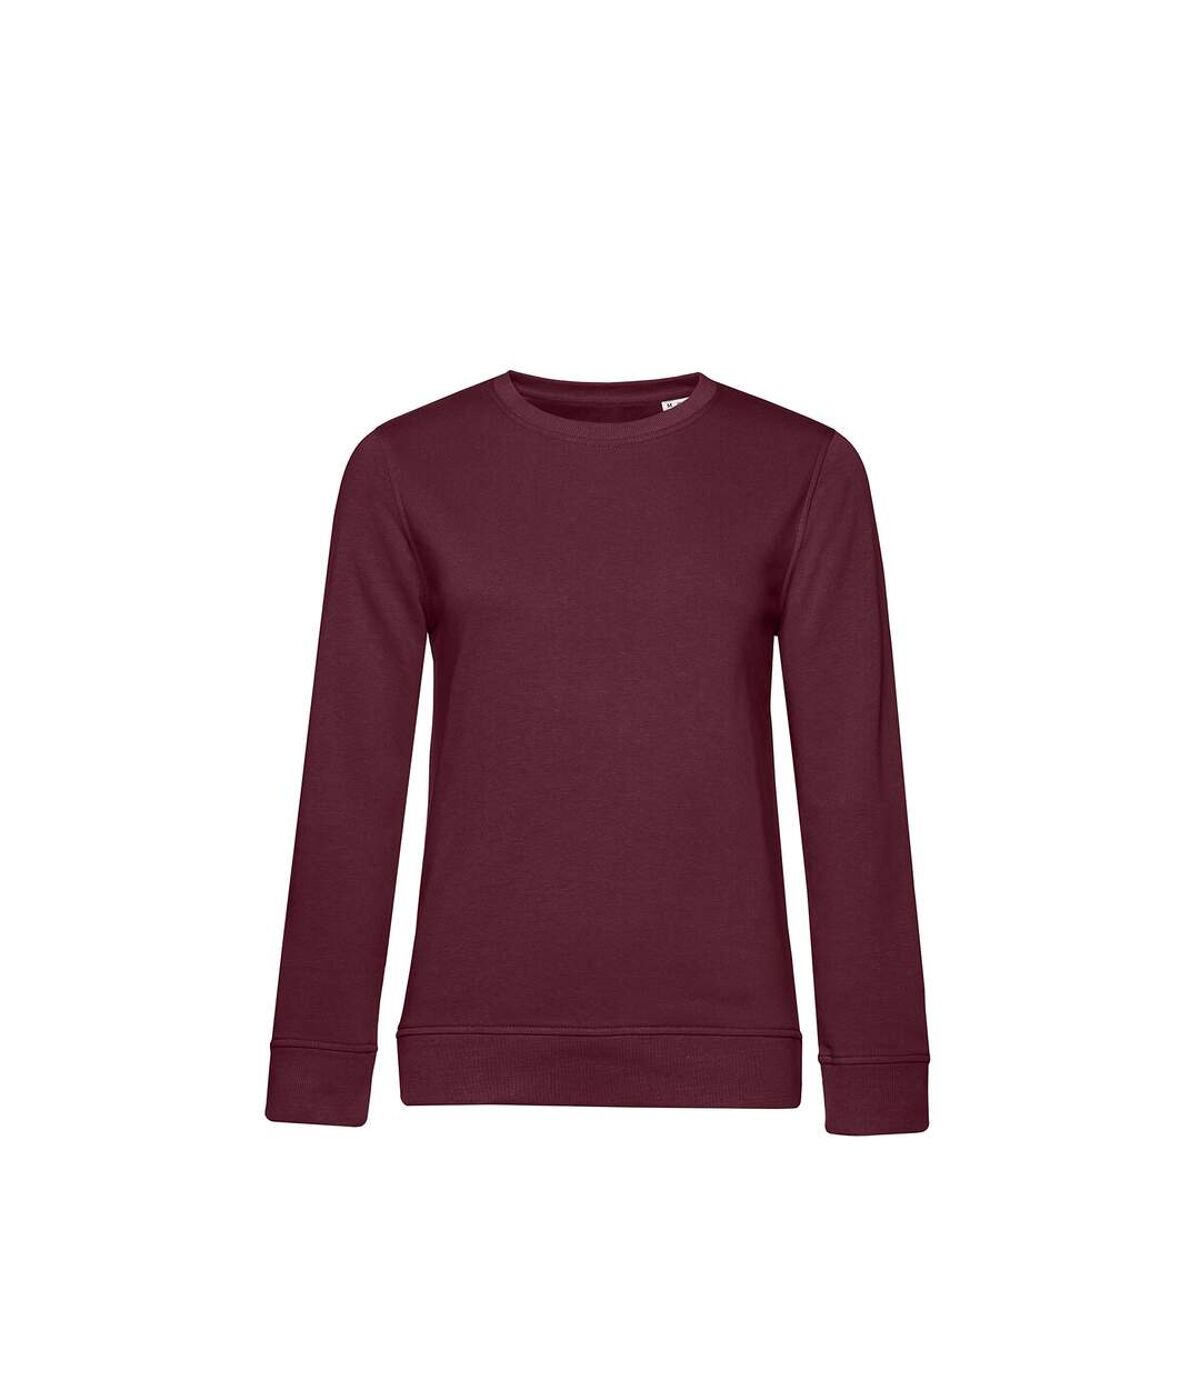 B&C Womens/Ladies Organic Sweatshirt (Burgundy)